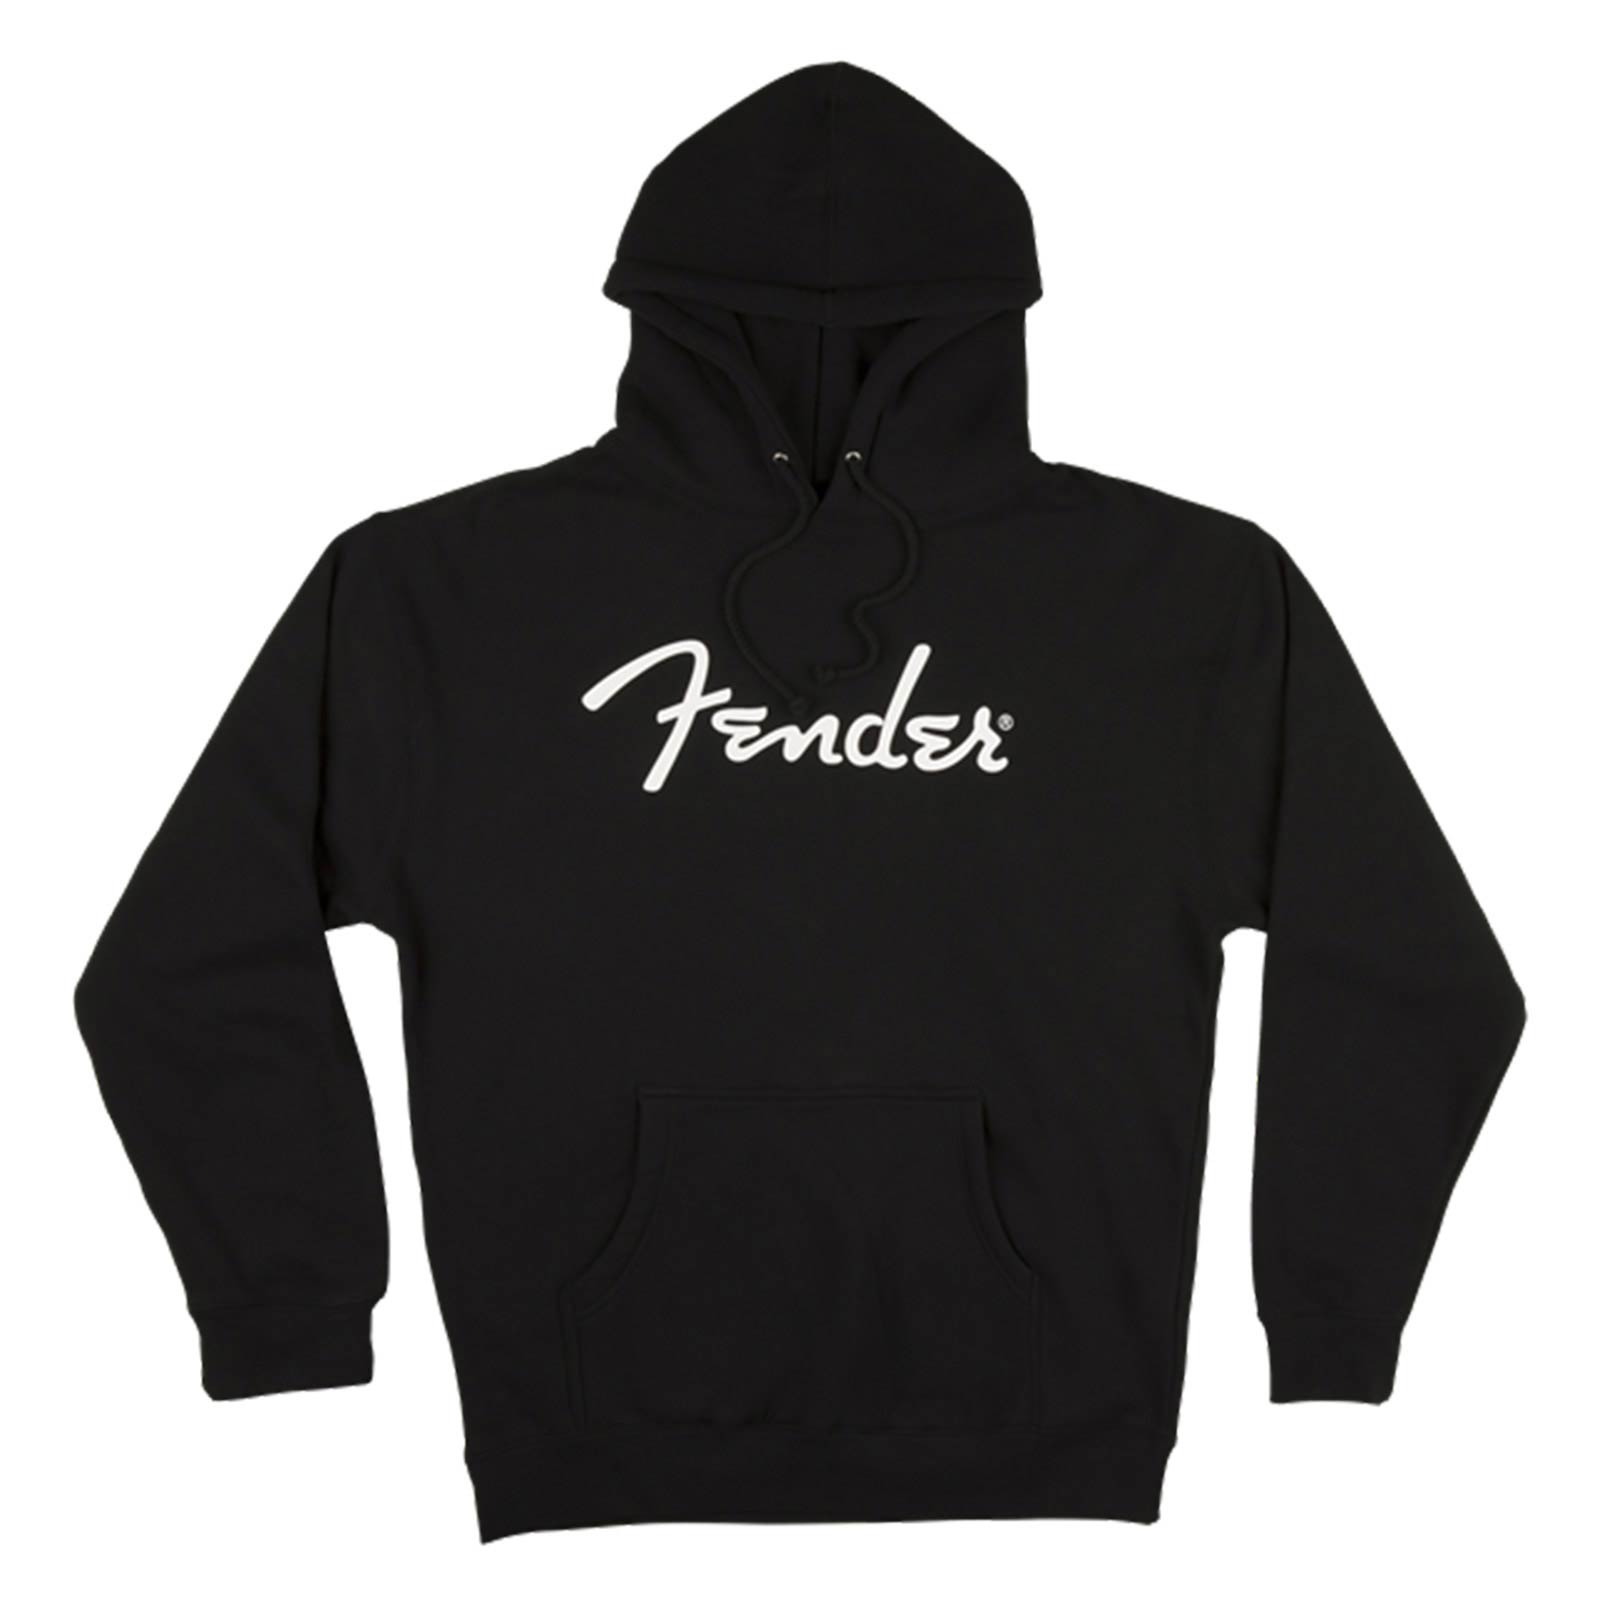 Fender 9113017306 logo hoodie, black, small